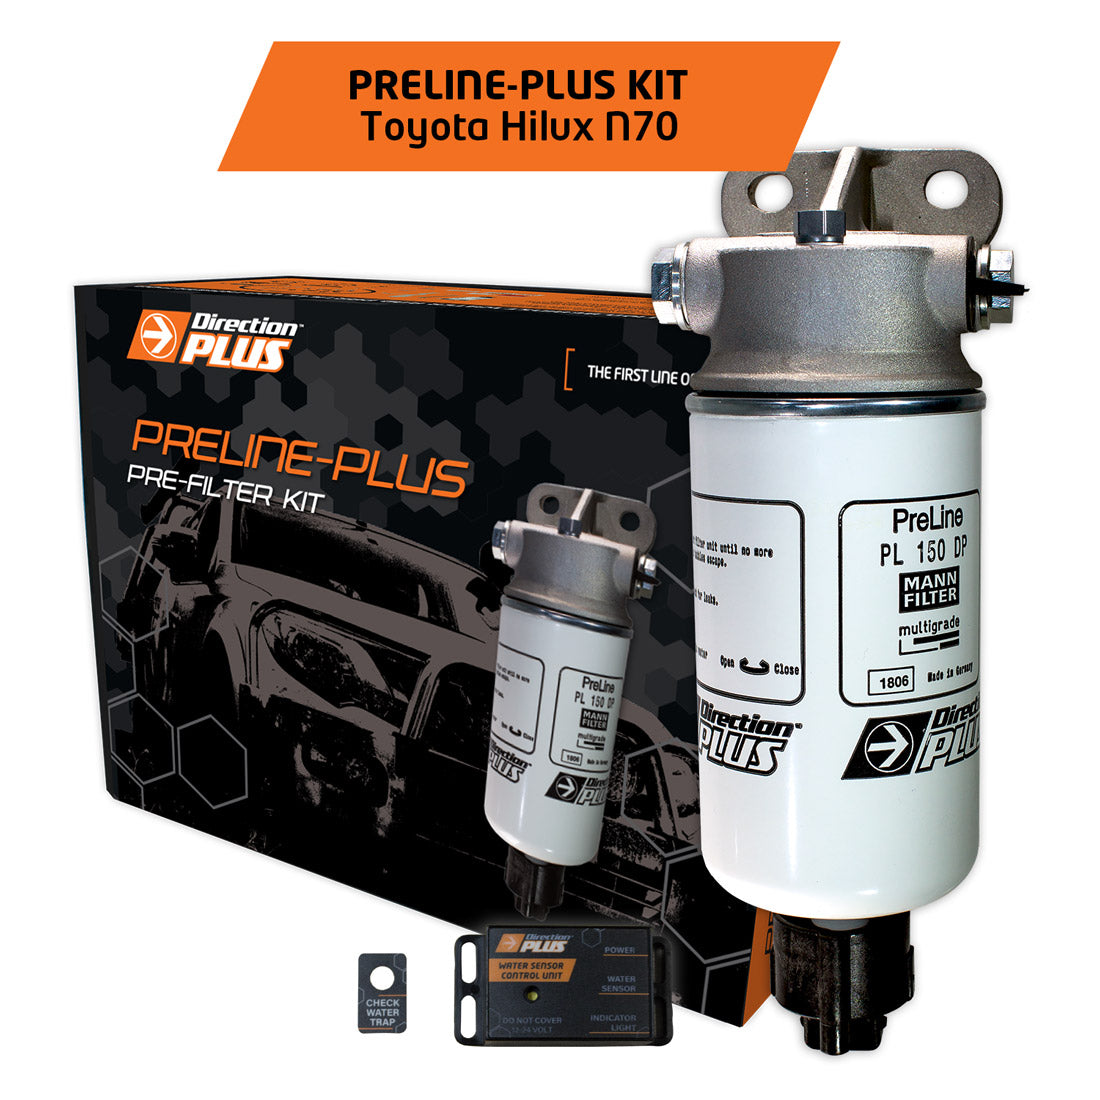 Preline-Plus Diesel Pre-Filter Kit - Toyota Hilux N70 (2004-2015)